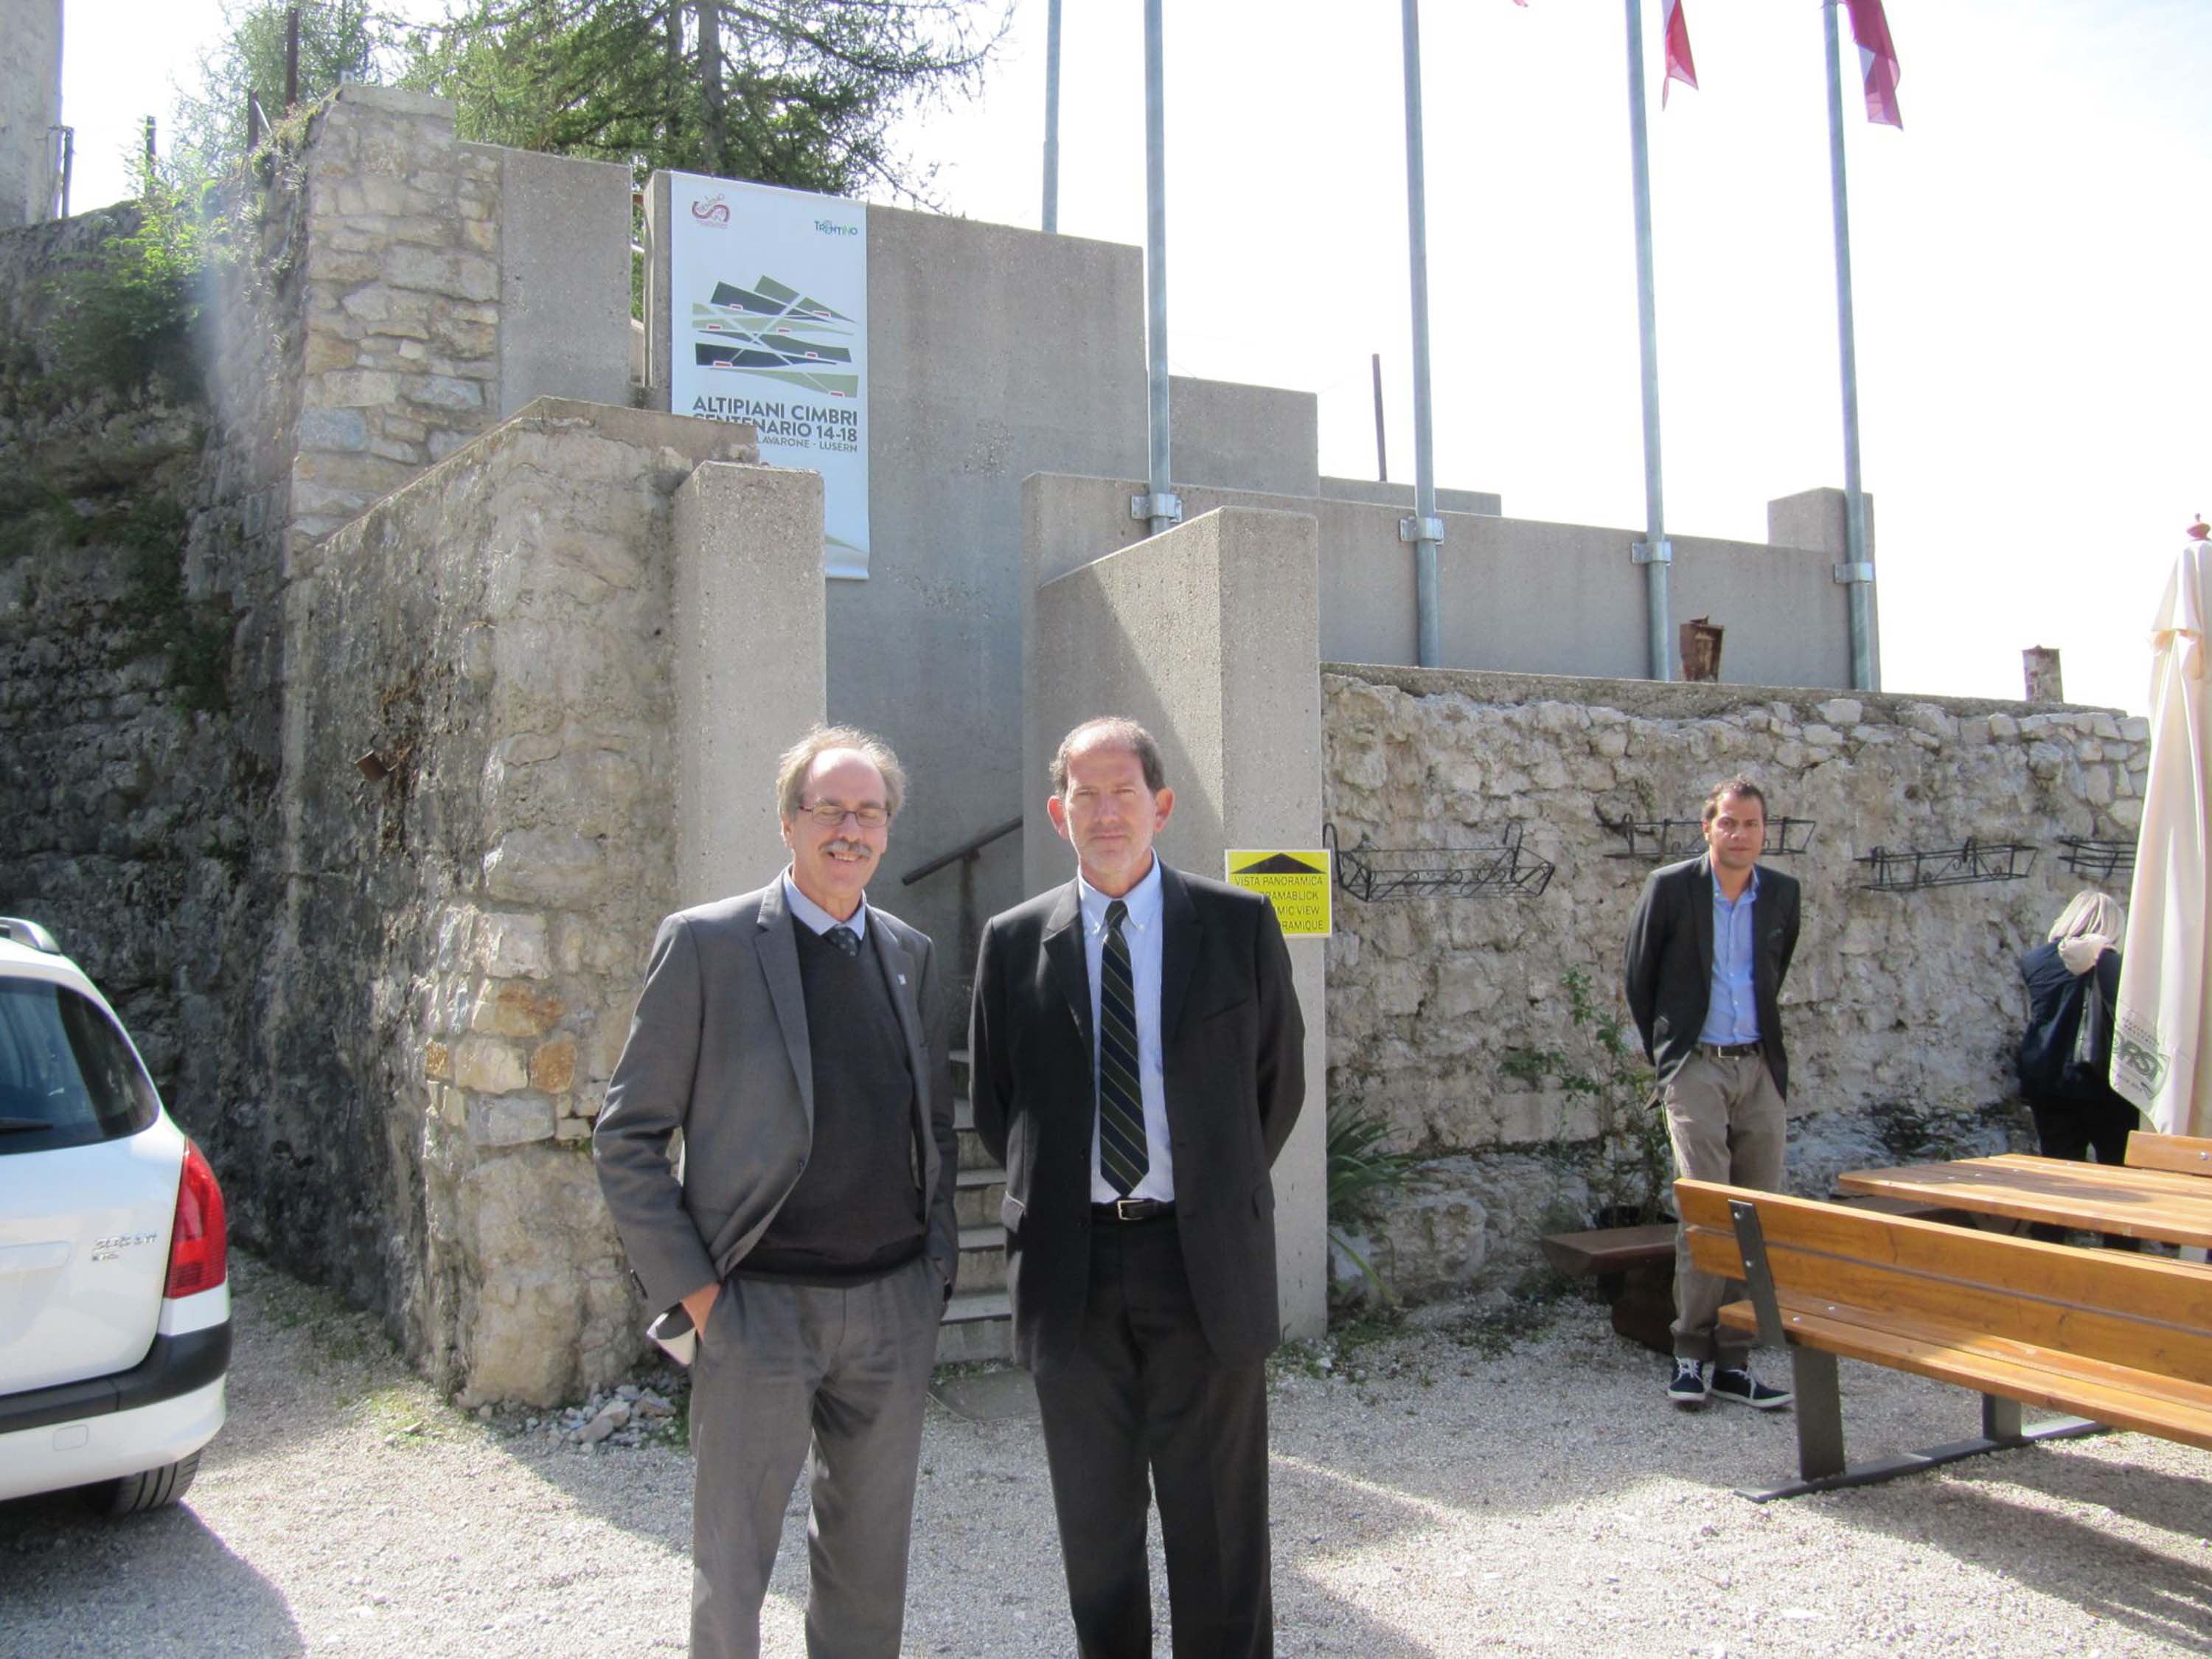 Gianni Torrenti (Assessore Cultura Regione autonoma Friuli Venezia Giulia) e Alberto Pacher (Vicepresidente e assessore Cultura Provincia autonoma Trento). [Lavarone (TN) 18/09/13]